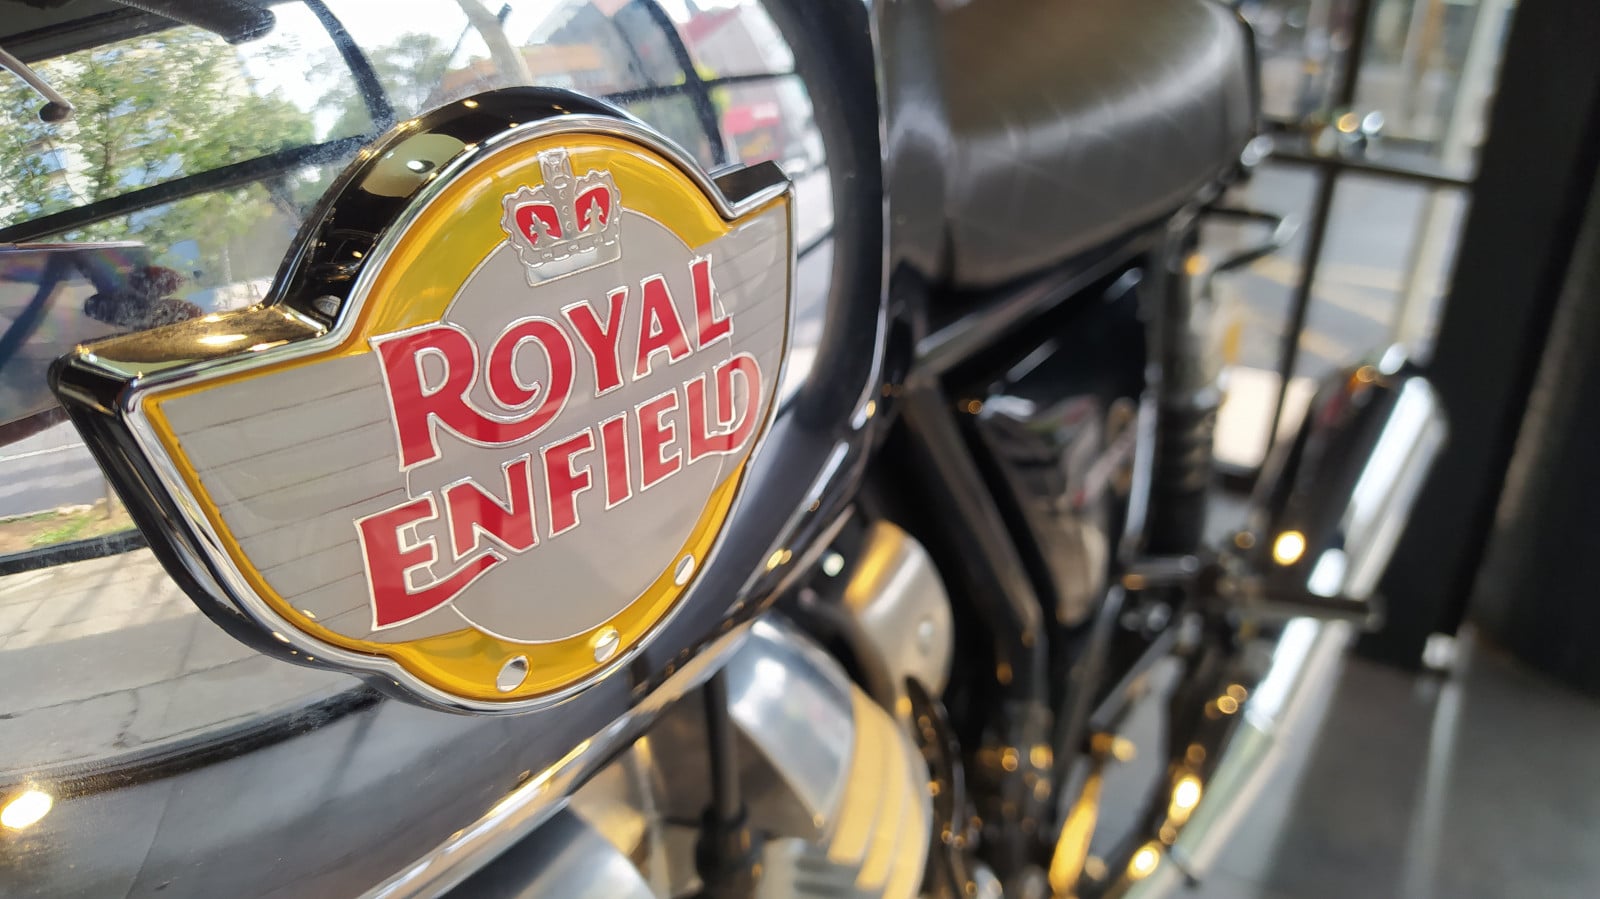 Royal Enfield muestra su pasión e historia